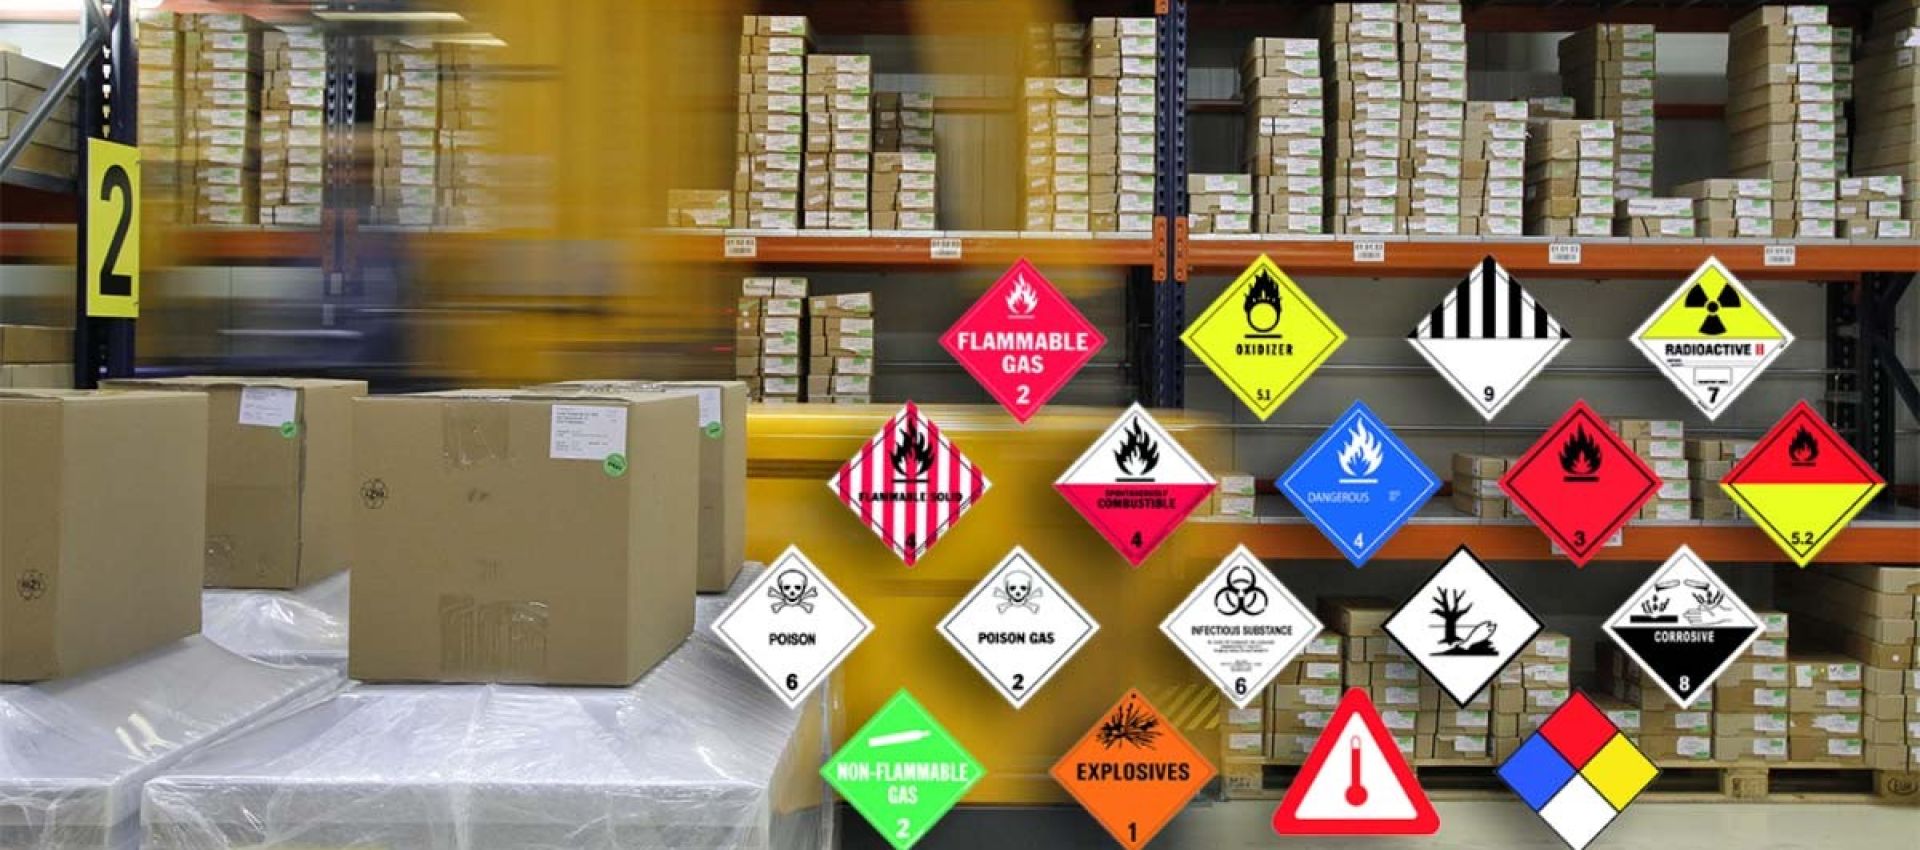 Image shows labels 5.2 oxidizer, Class 4, Dangerous When wet, Class 5.1 Oxidizer, Class 2 Flammable Poison, Poison Gas